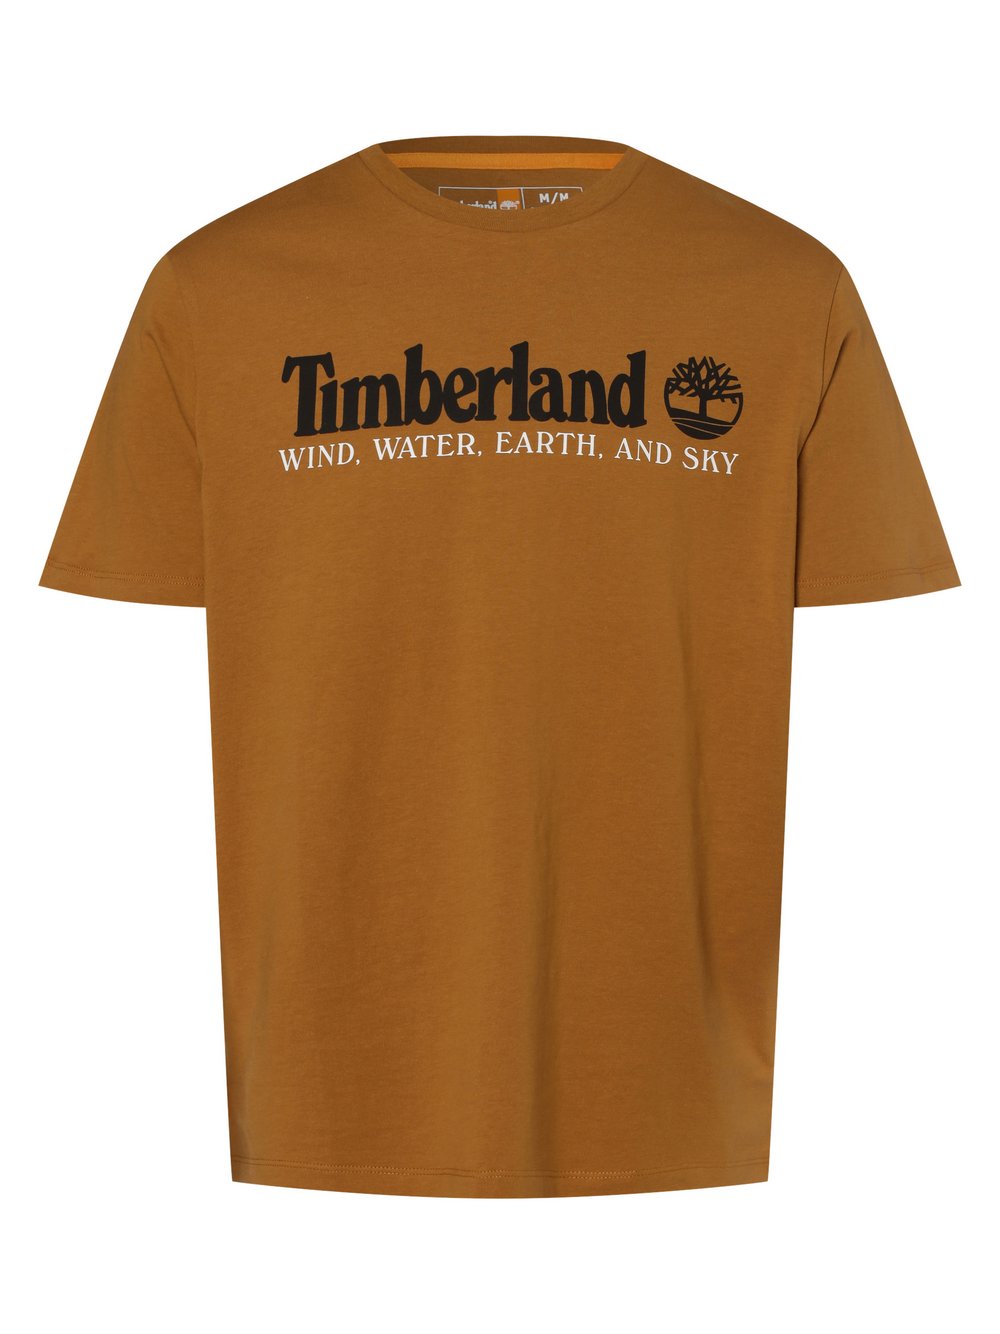 Timberland - T-shirt męski, brązowy